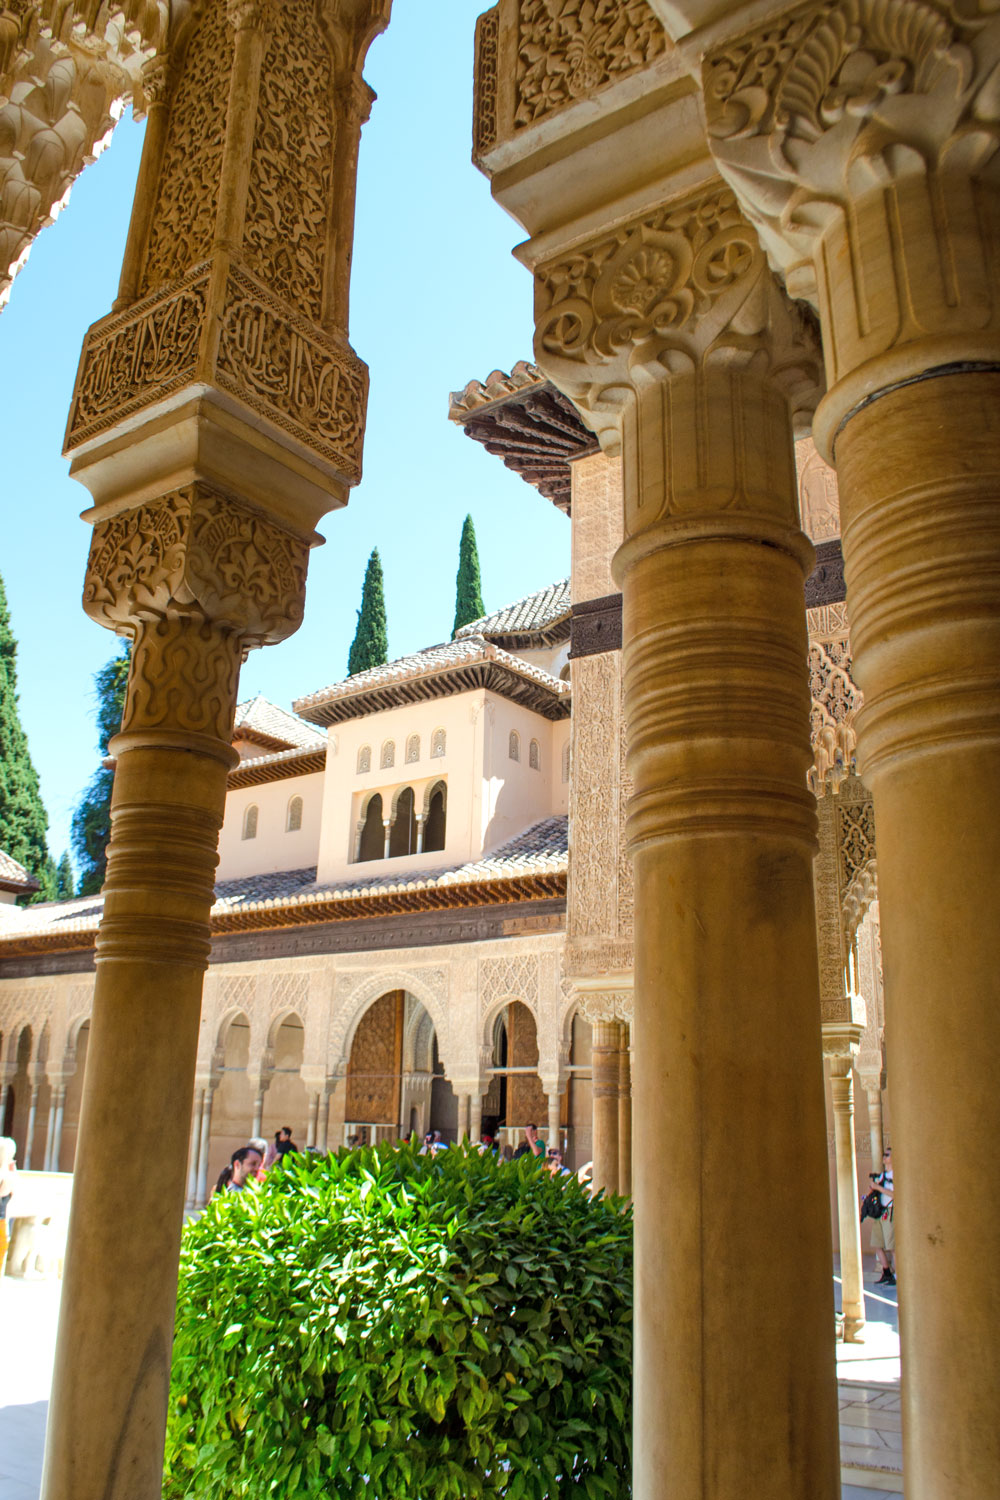 [unbezahlte werbung] Weltkulturerbe Alhambra -Die Paläste der Alhambra